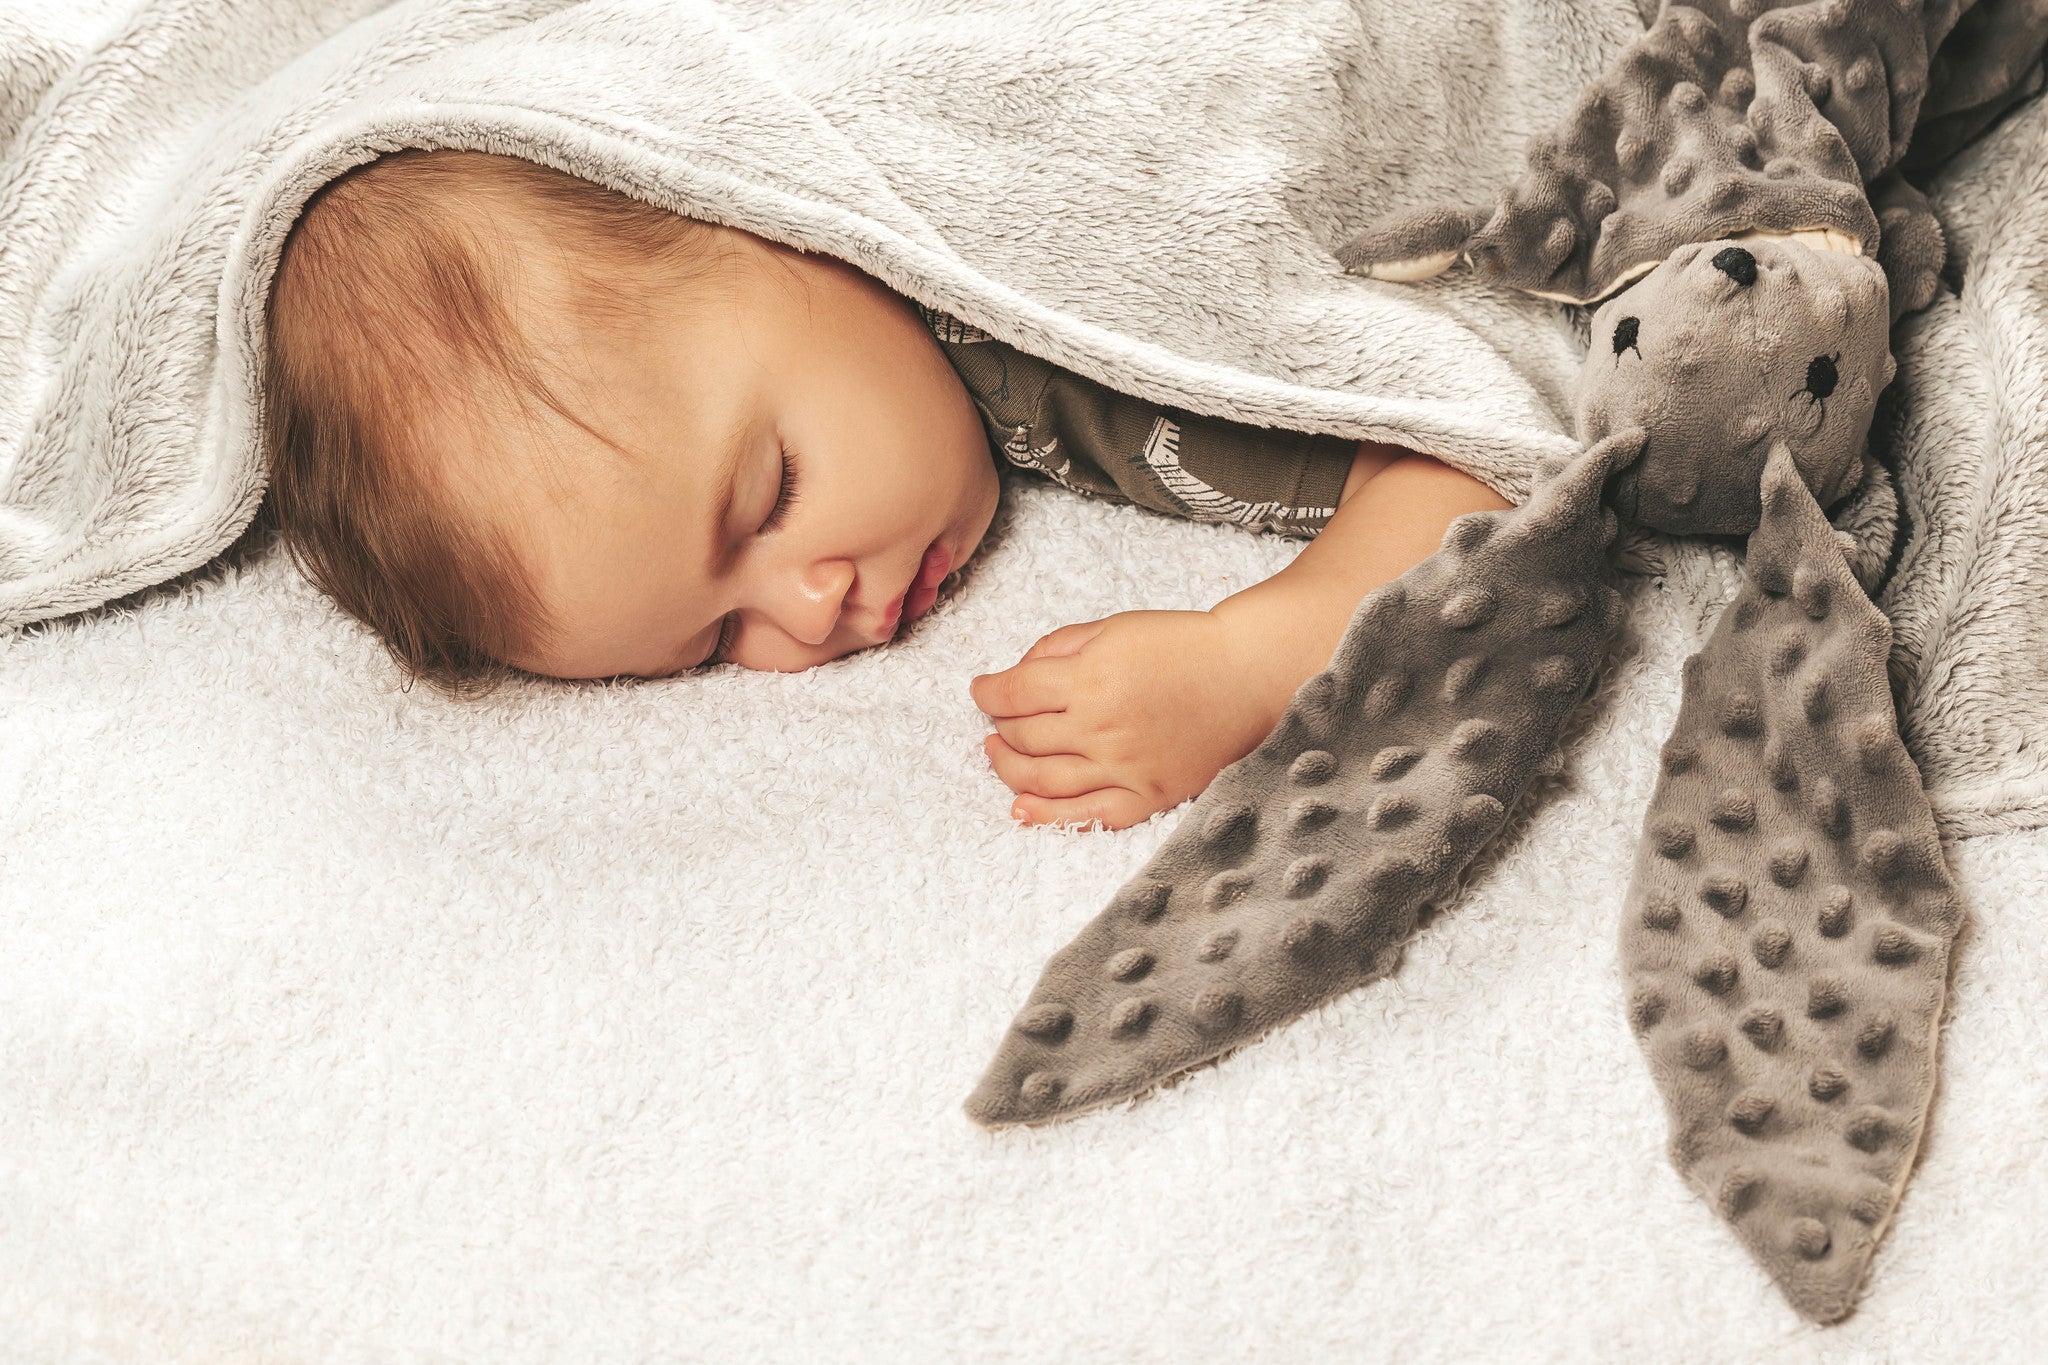 baby sleeping in a minky blanket